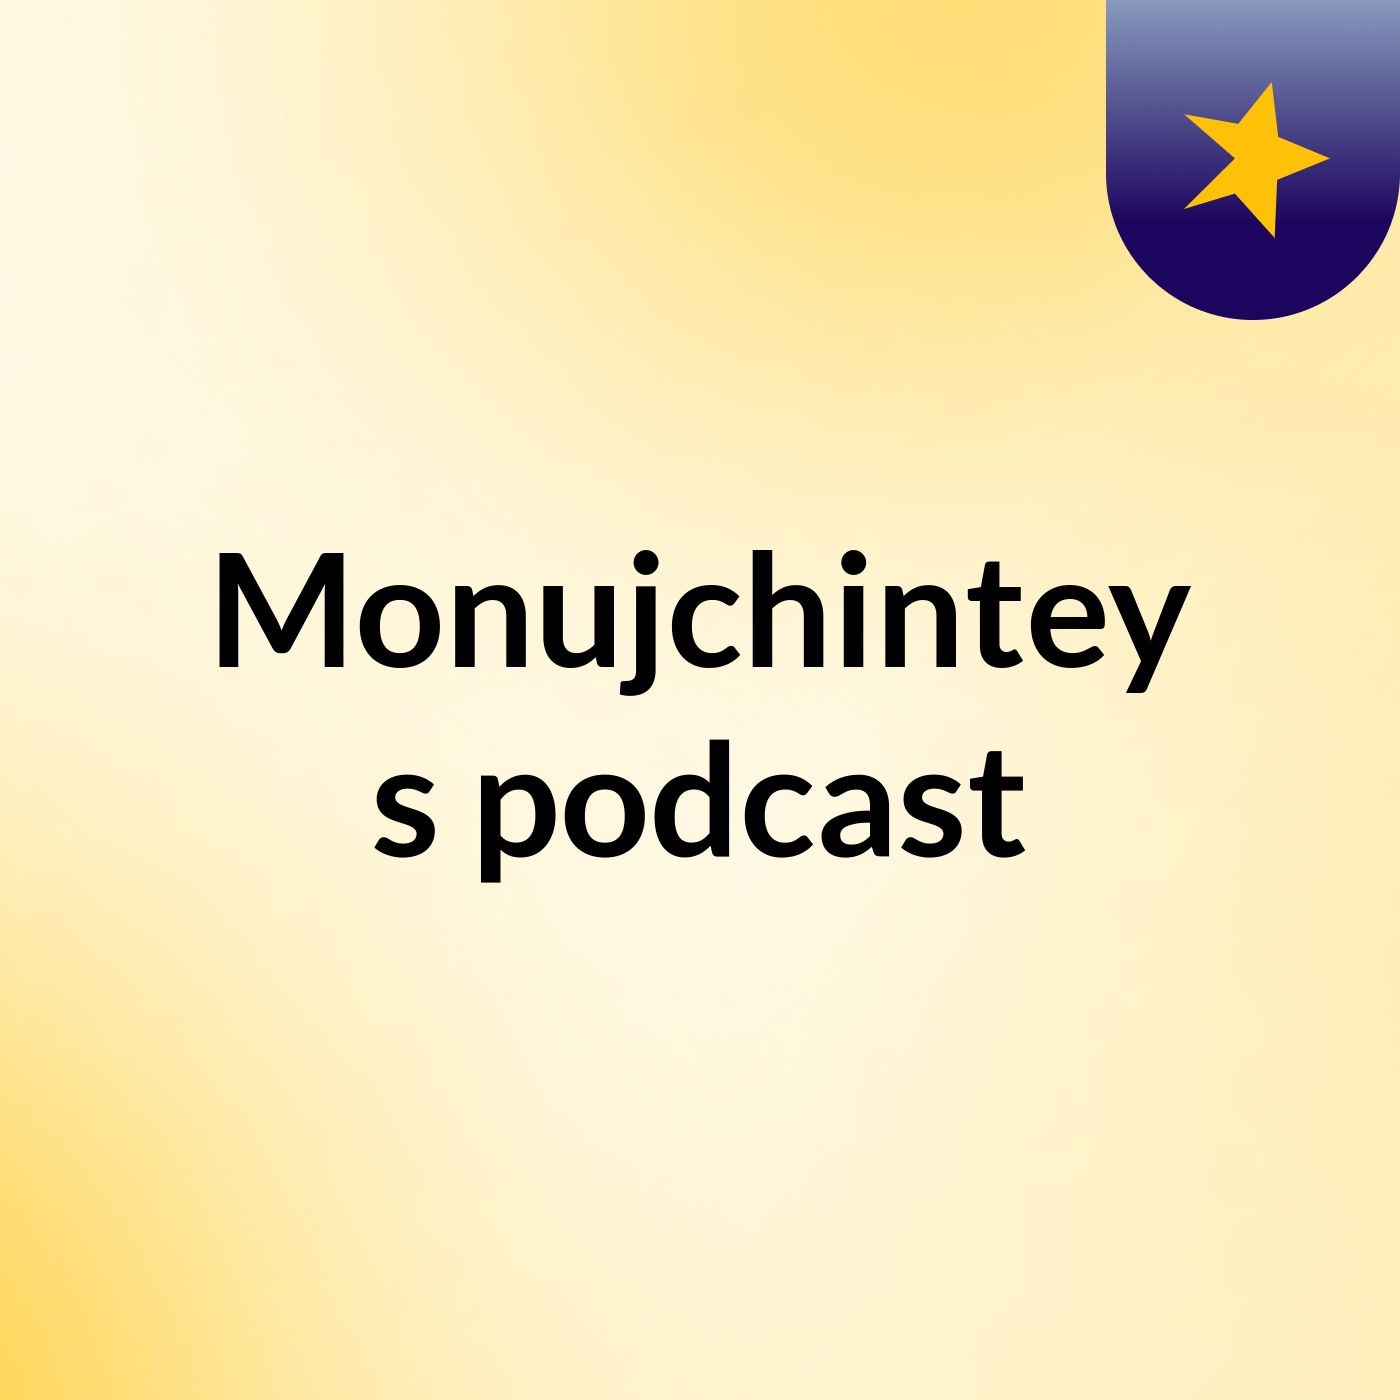 Episode 3 - Monujchintey's podcast